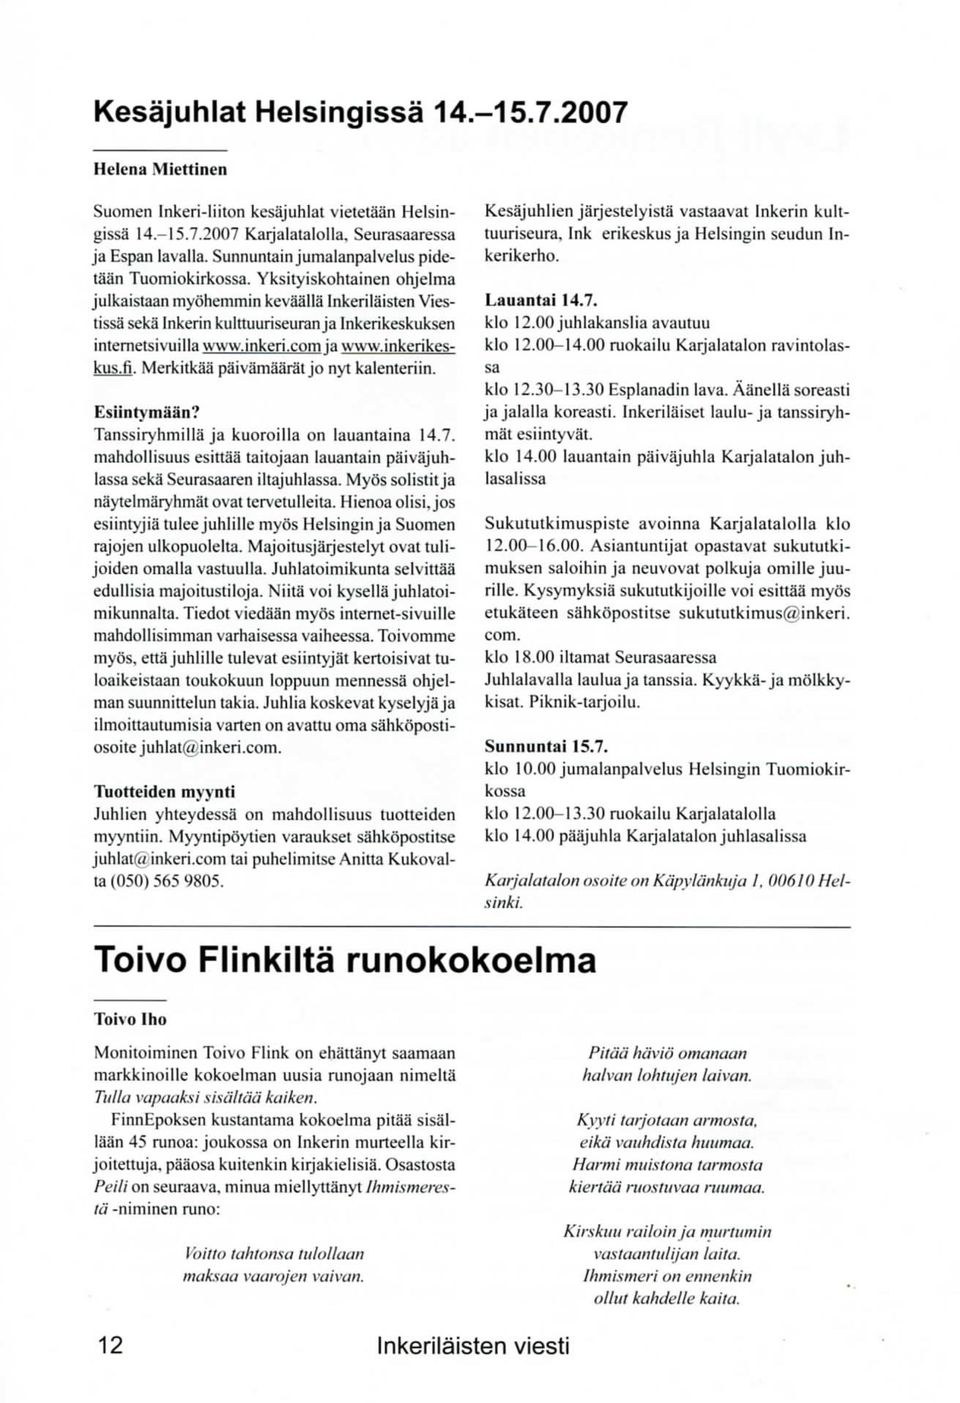 Yksityiskohtainen ohjelma julkaistaan rnyohemmin kevaalla Inkerilaisten Viestissa seka Inkerin kulttuuriseuran ja Inkerikeskuksen intemetsivuilla www.inkeri.com ja www.inkerikeskus.fi.